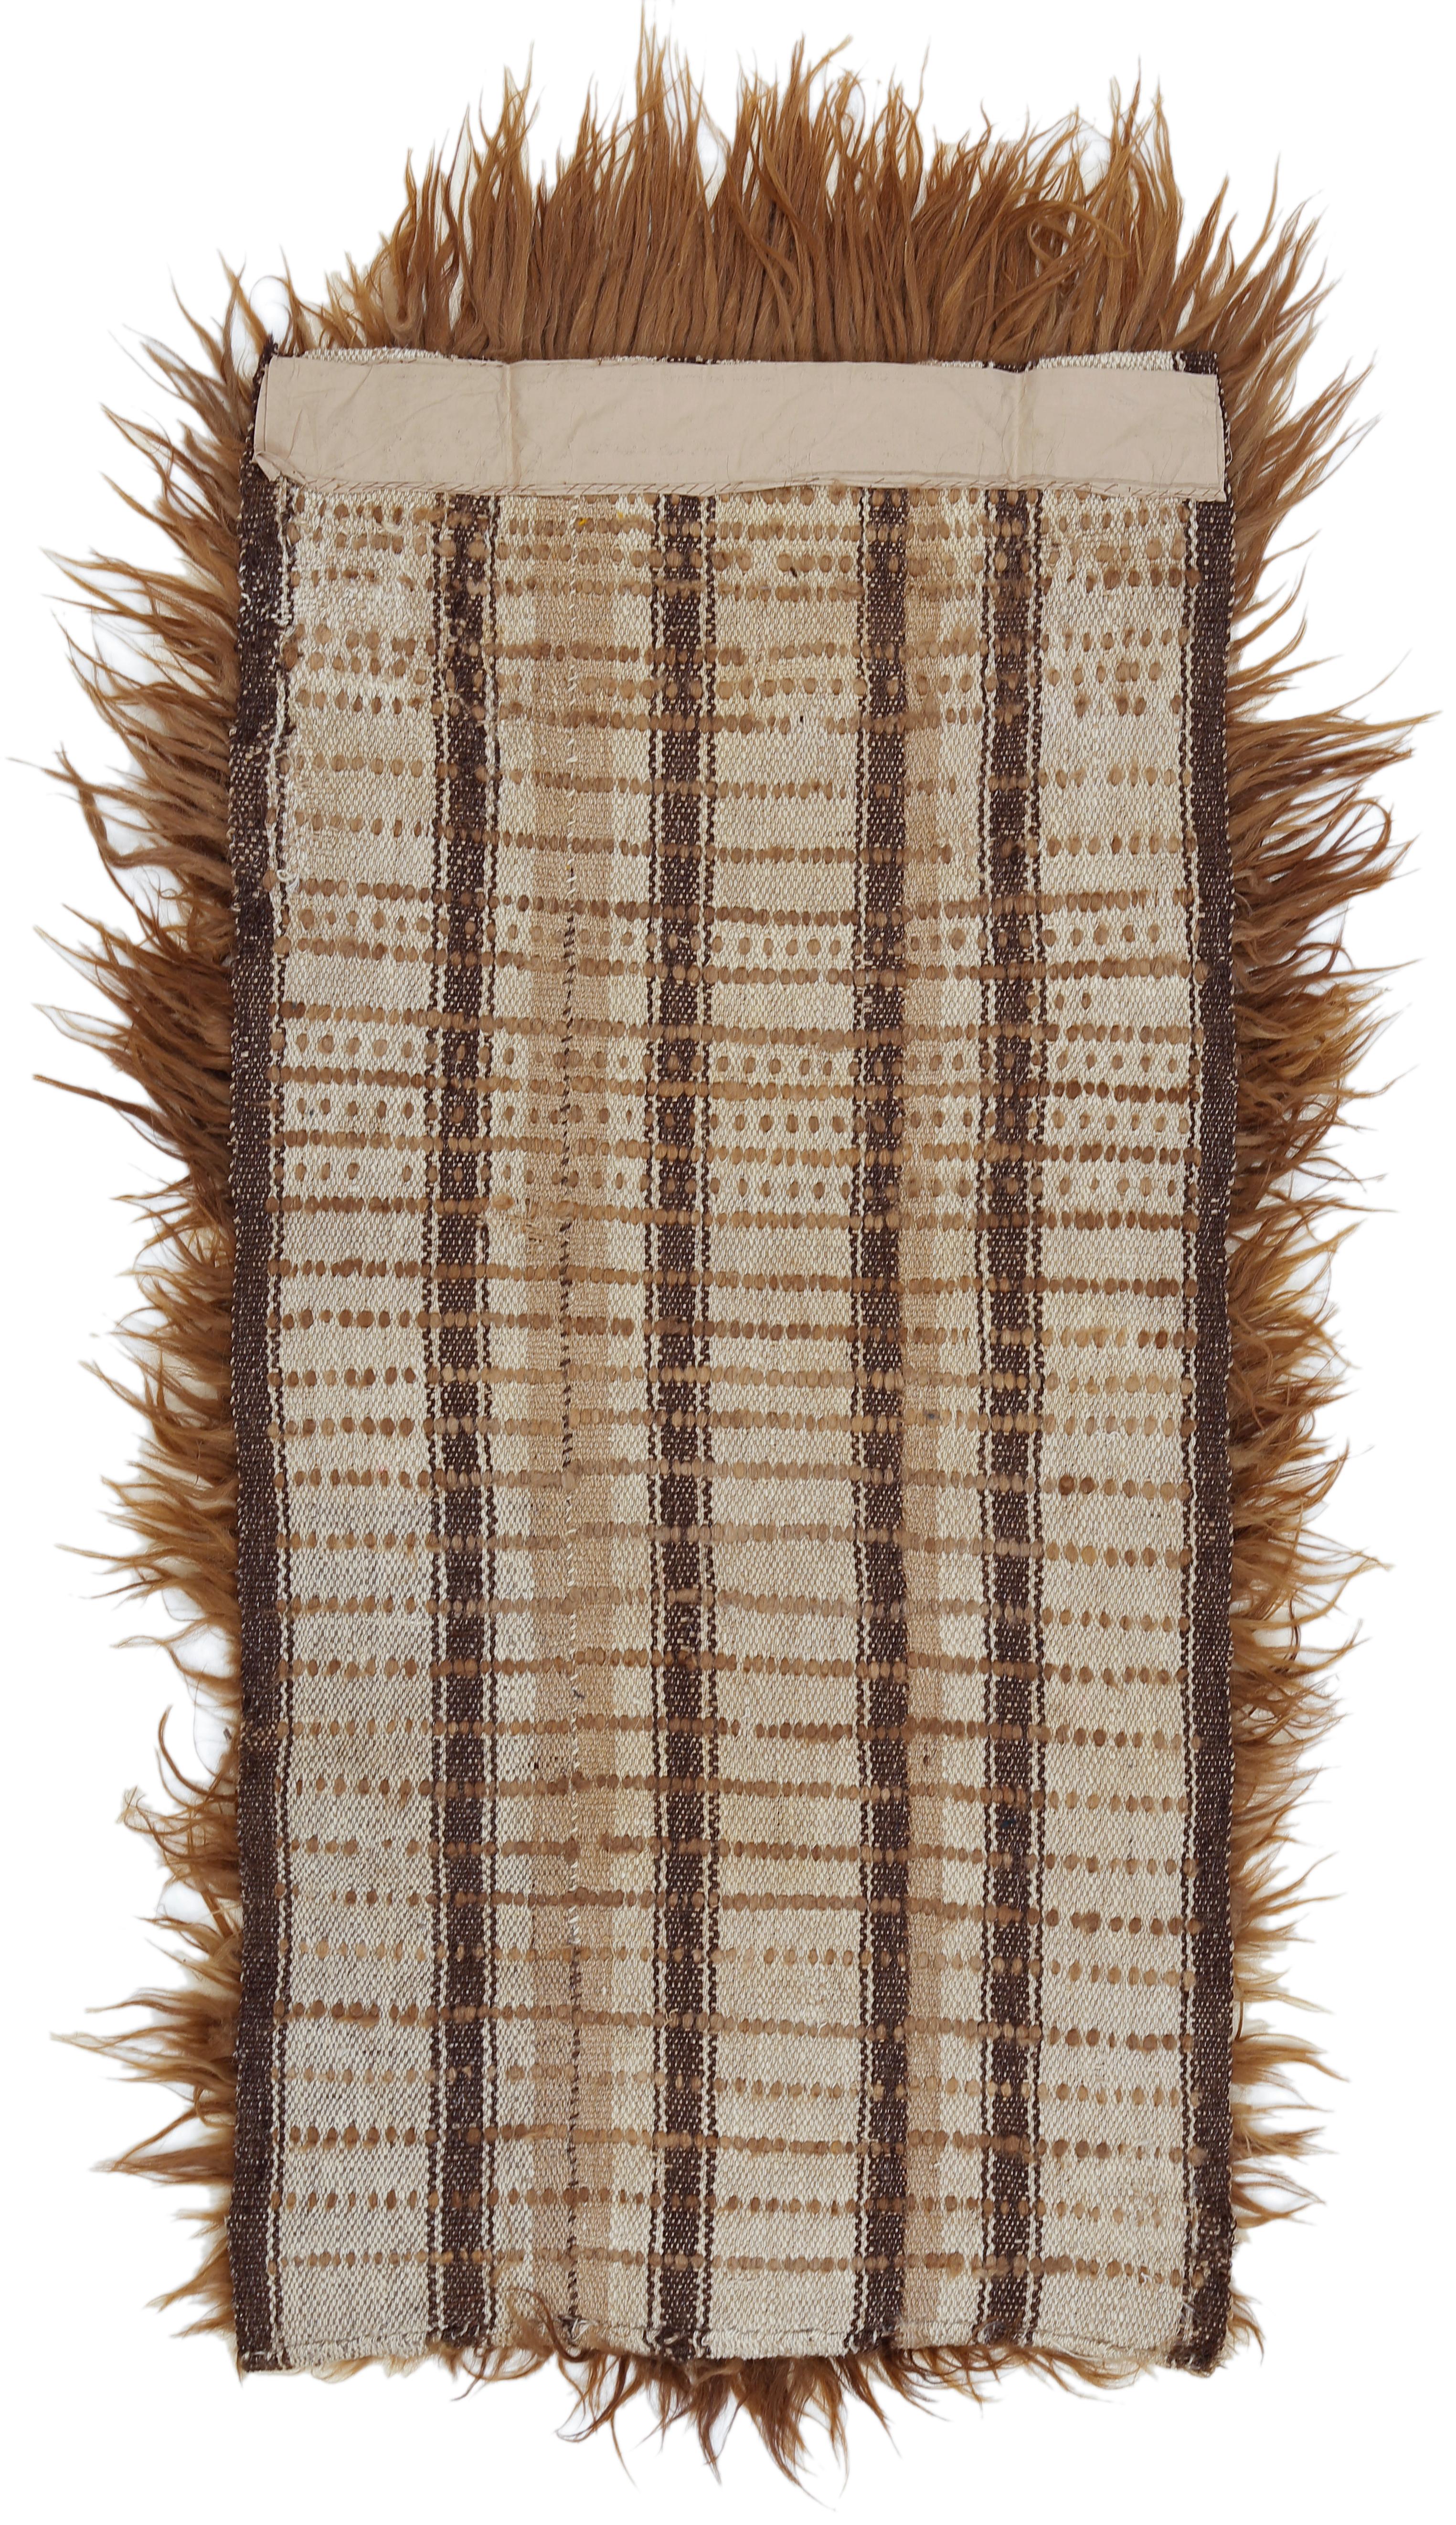 Tapis très rare originaire du désert du Taklamakan, situé au nord-ouest de la Chine, noué de façon éparse avec des brins de poils de chameau non filés. Chaque rangée de nœuds est séparée par une quantité considérable de trames de laine, ce qui donne